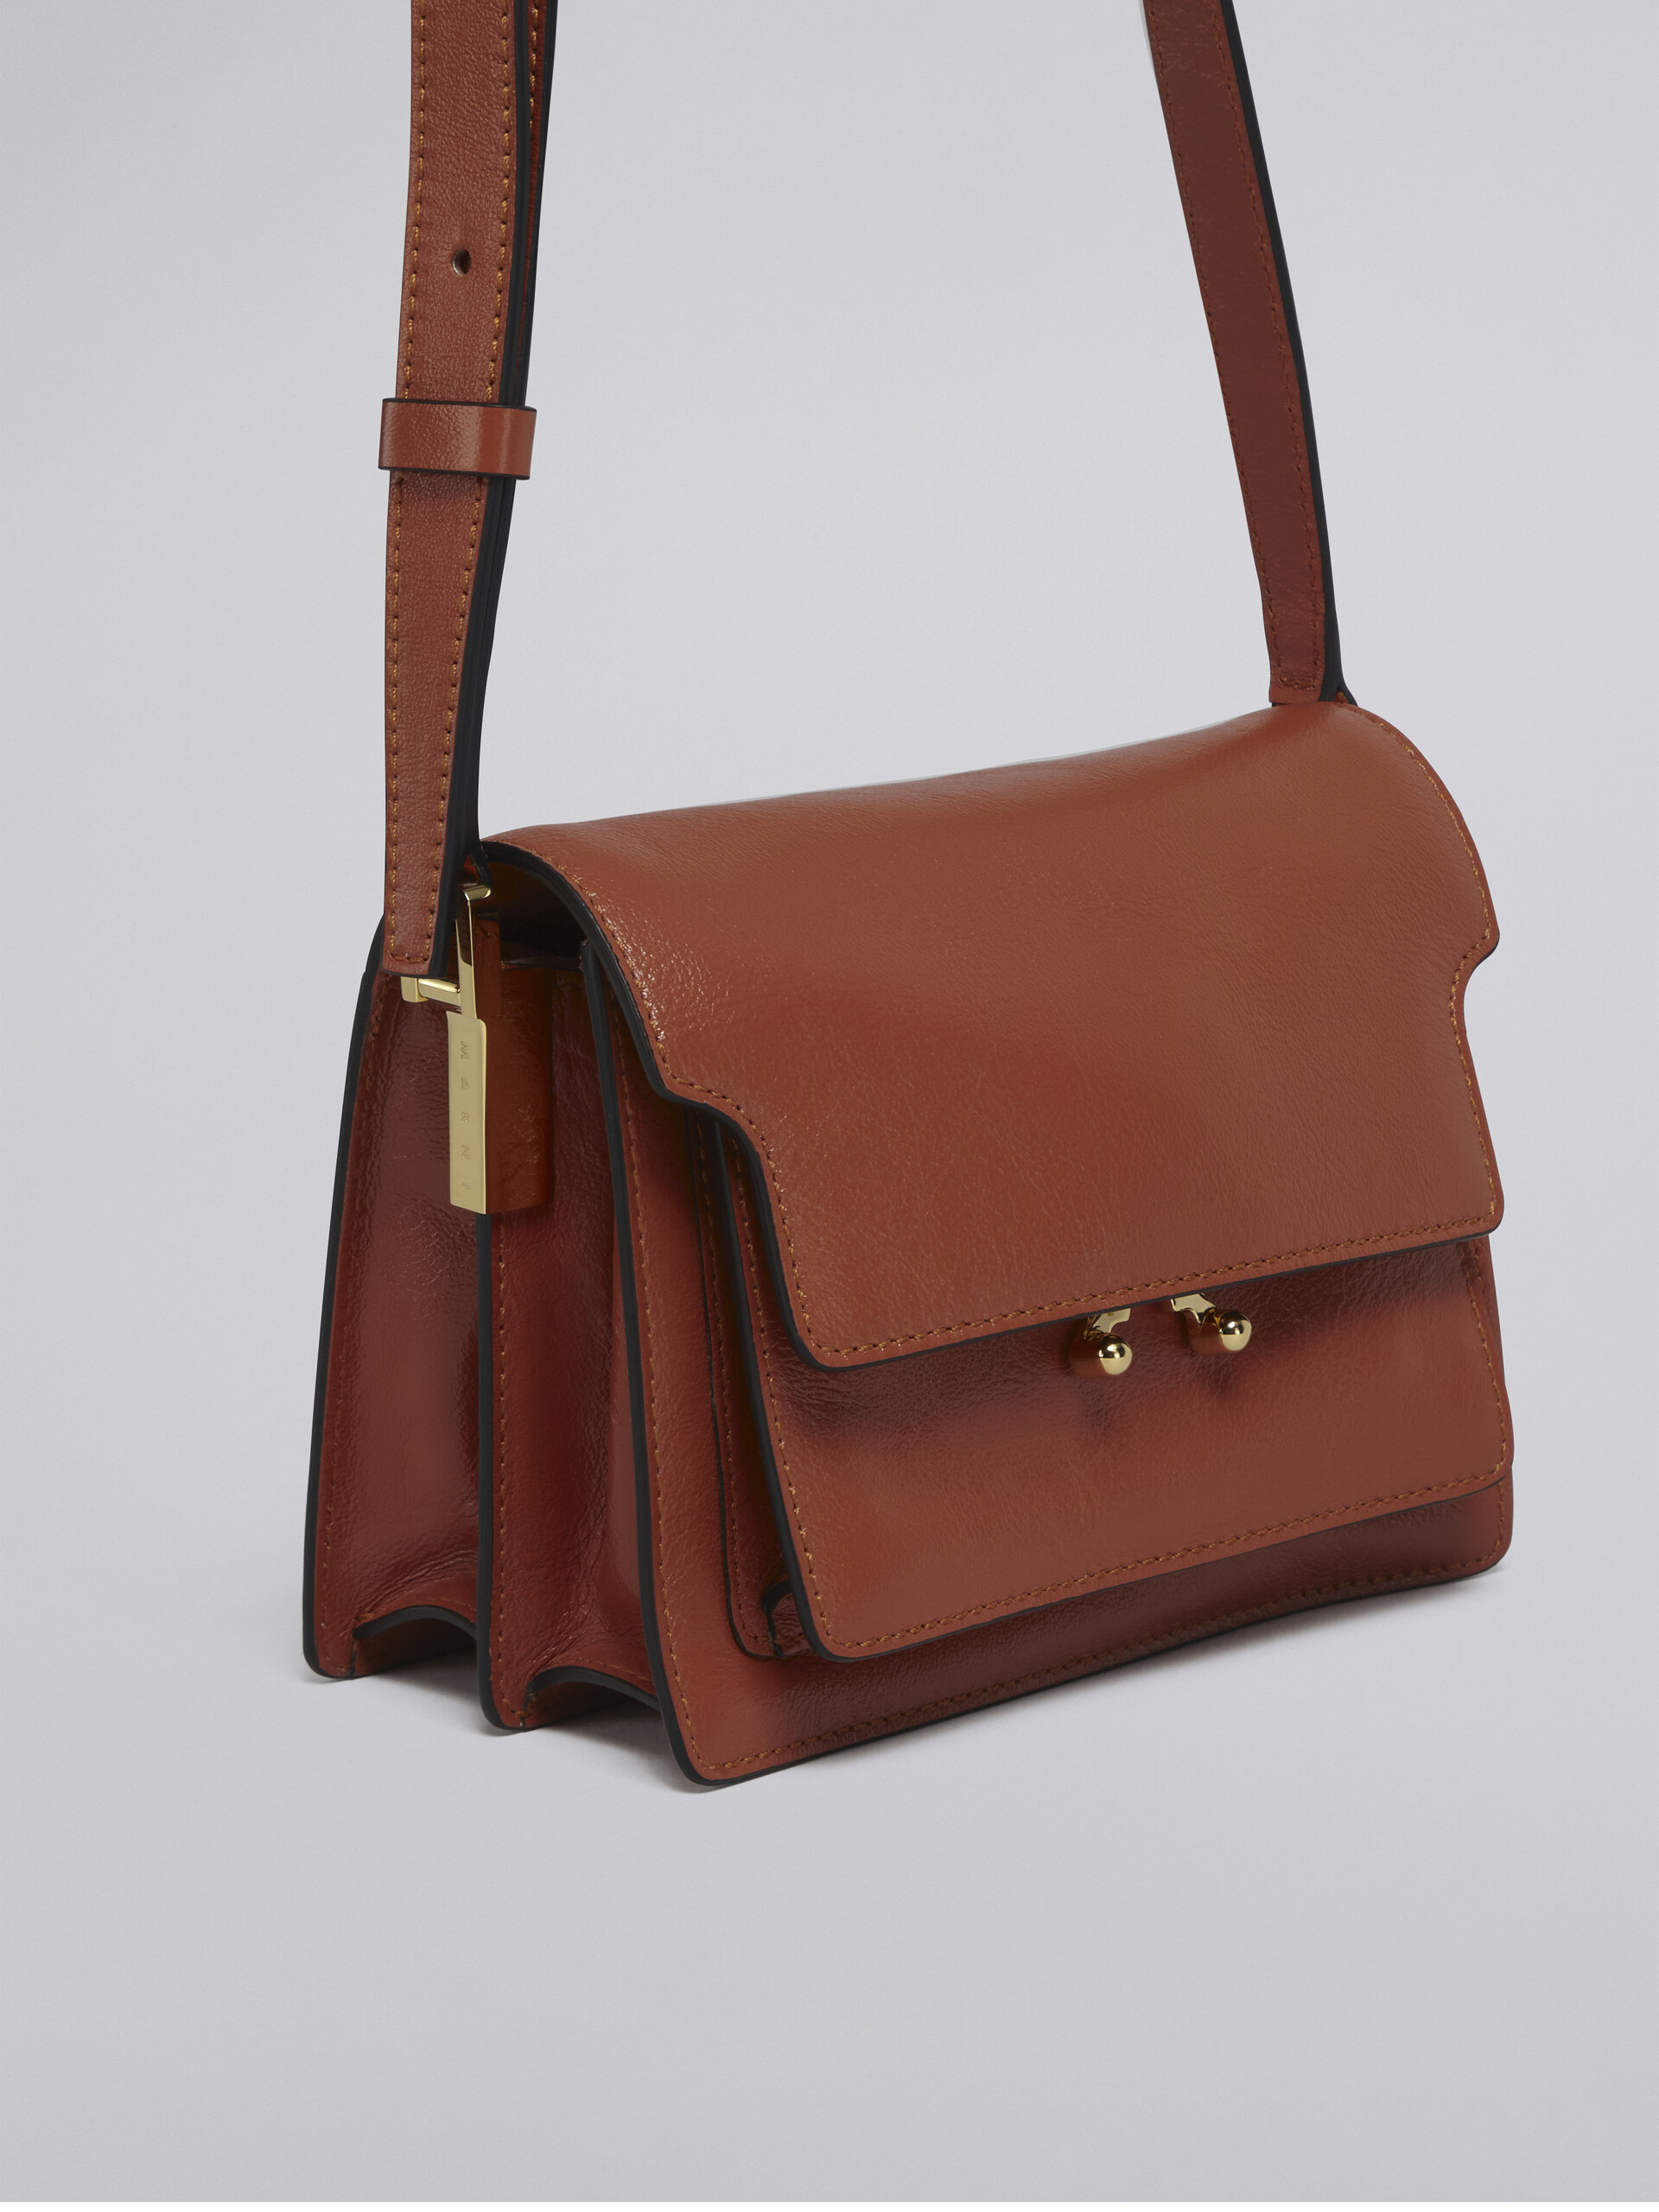 TRUNK SOFT bag mini in pelle marrone - Borse a spalla - Image 5